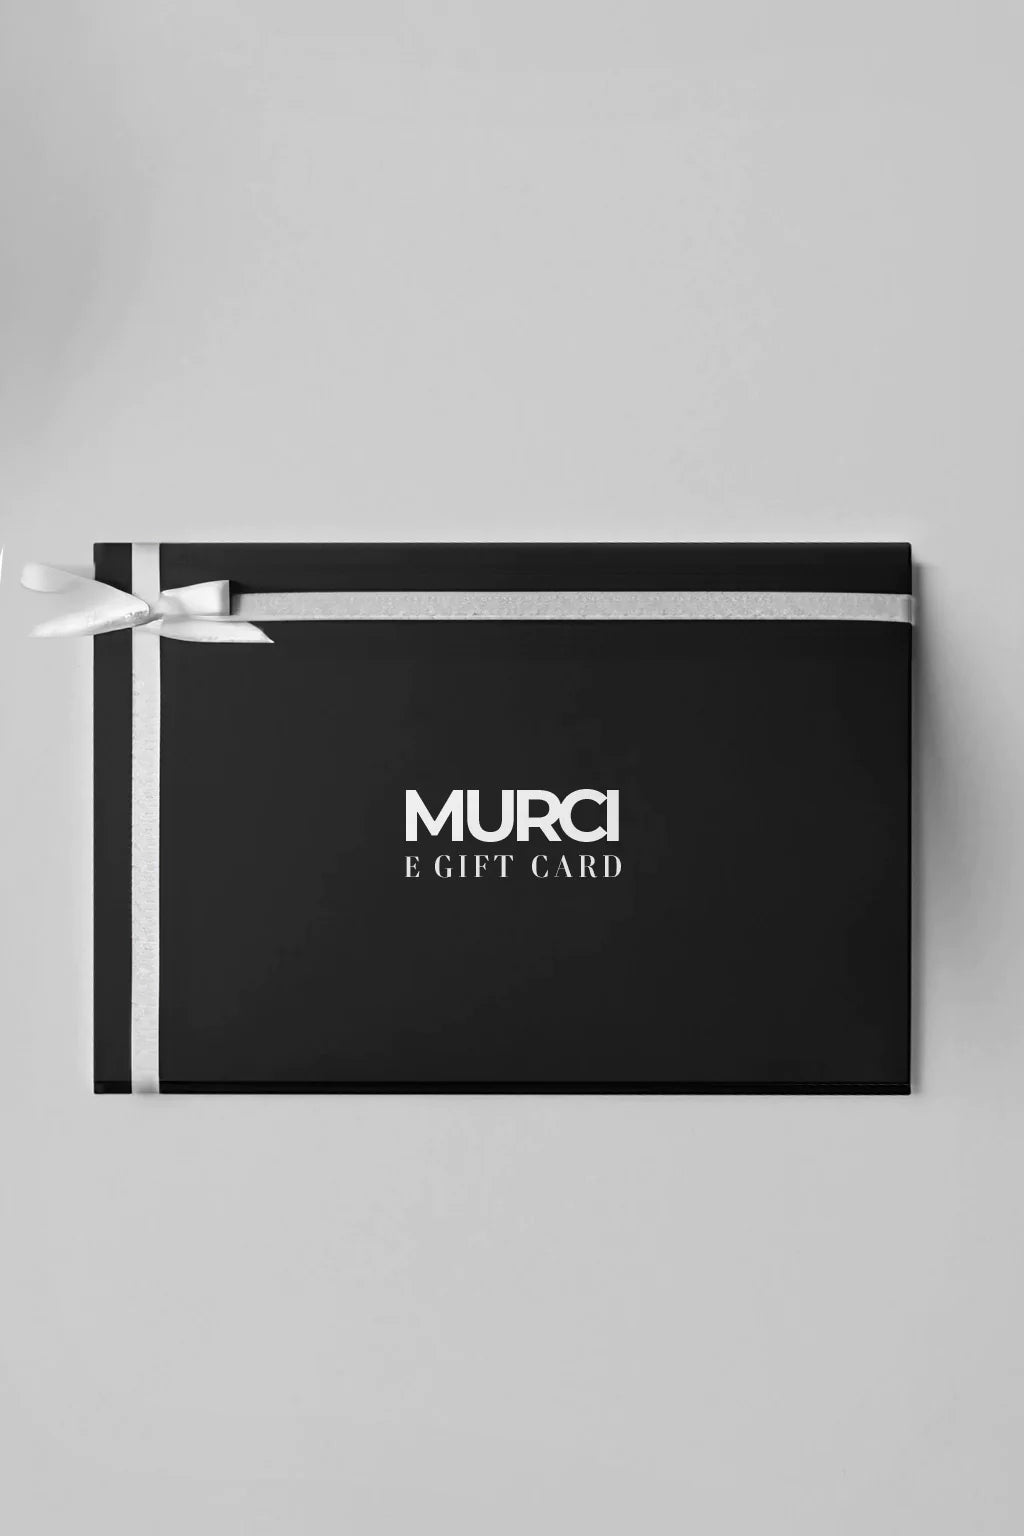 MURCI GIFT CARD